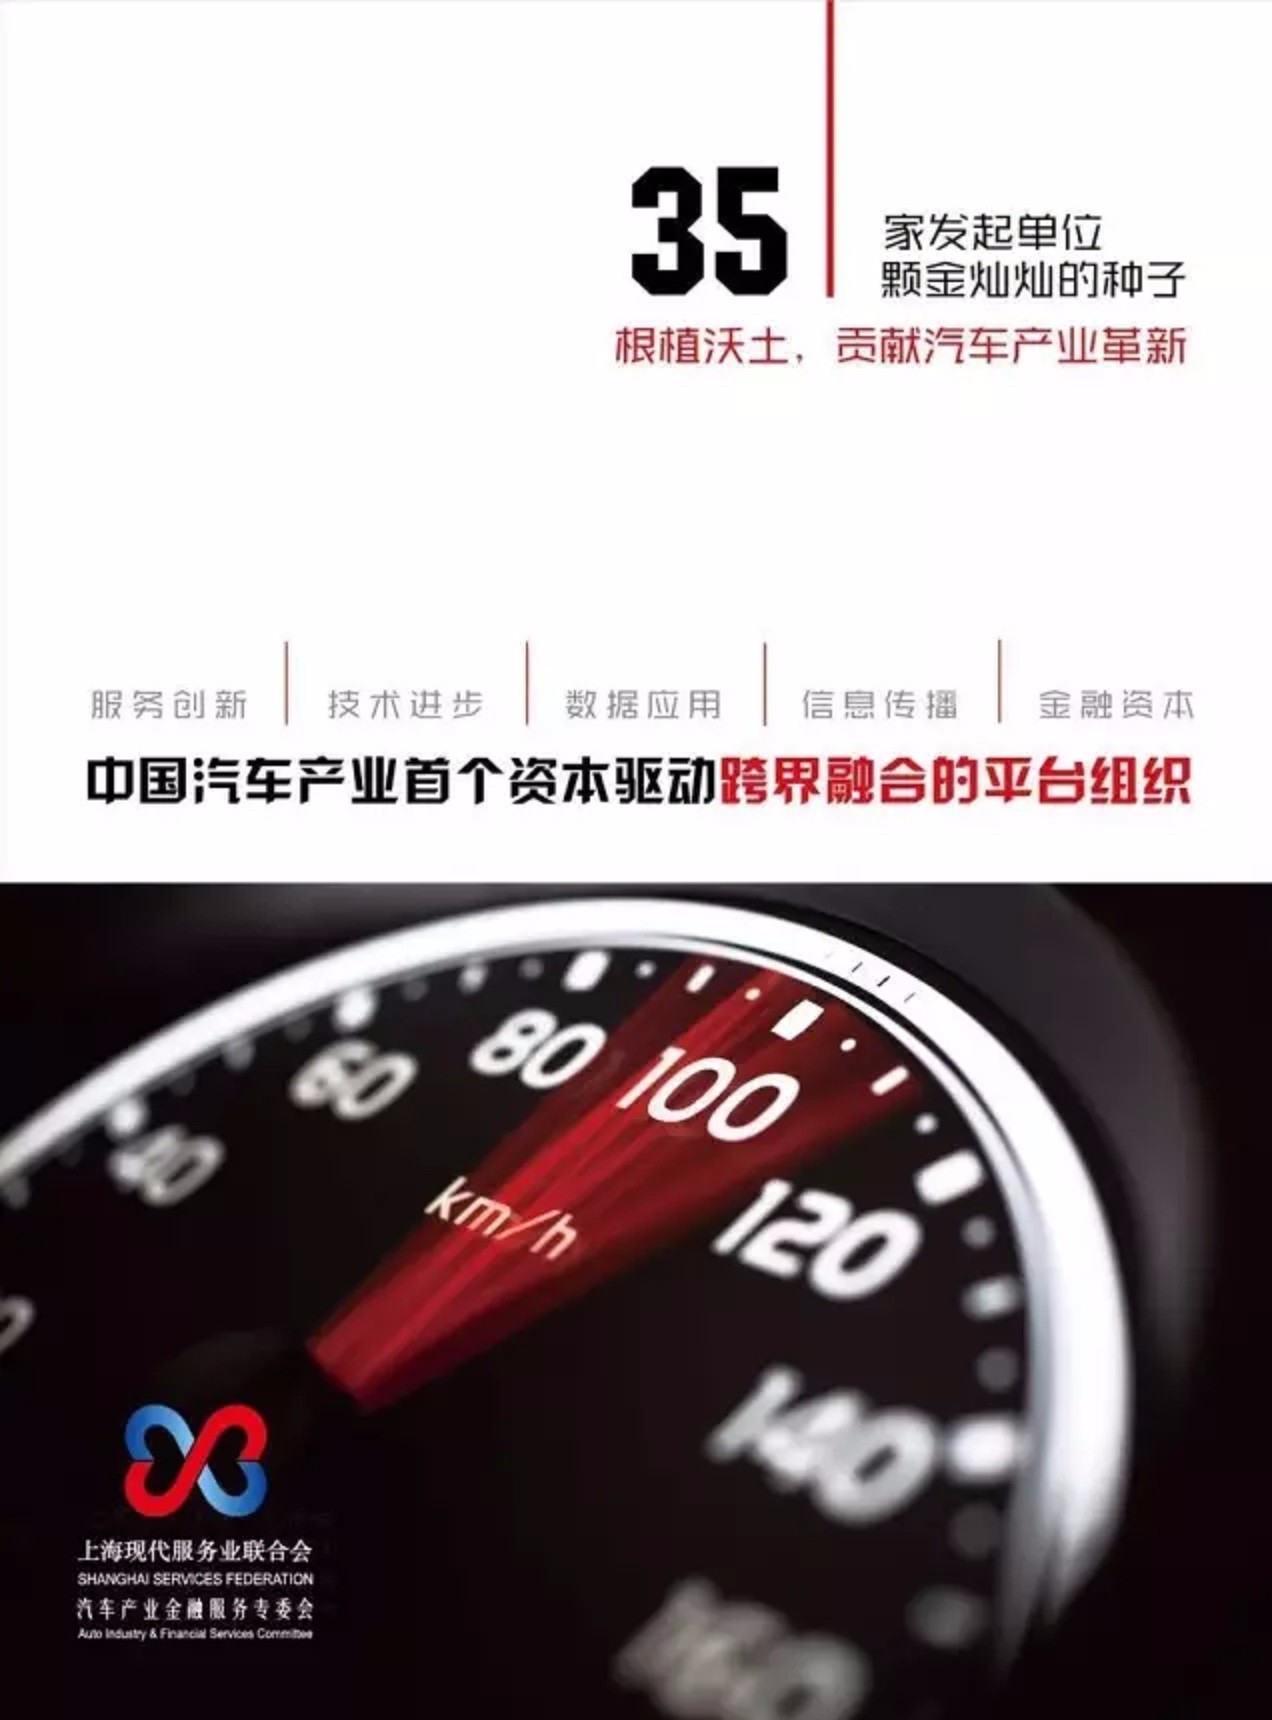 上海现代服务业联合会汽车产业金融服务专委会